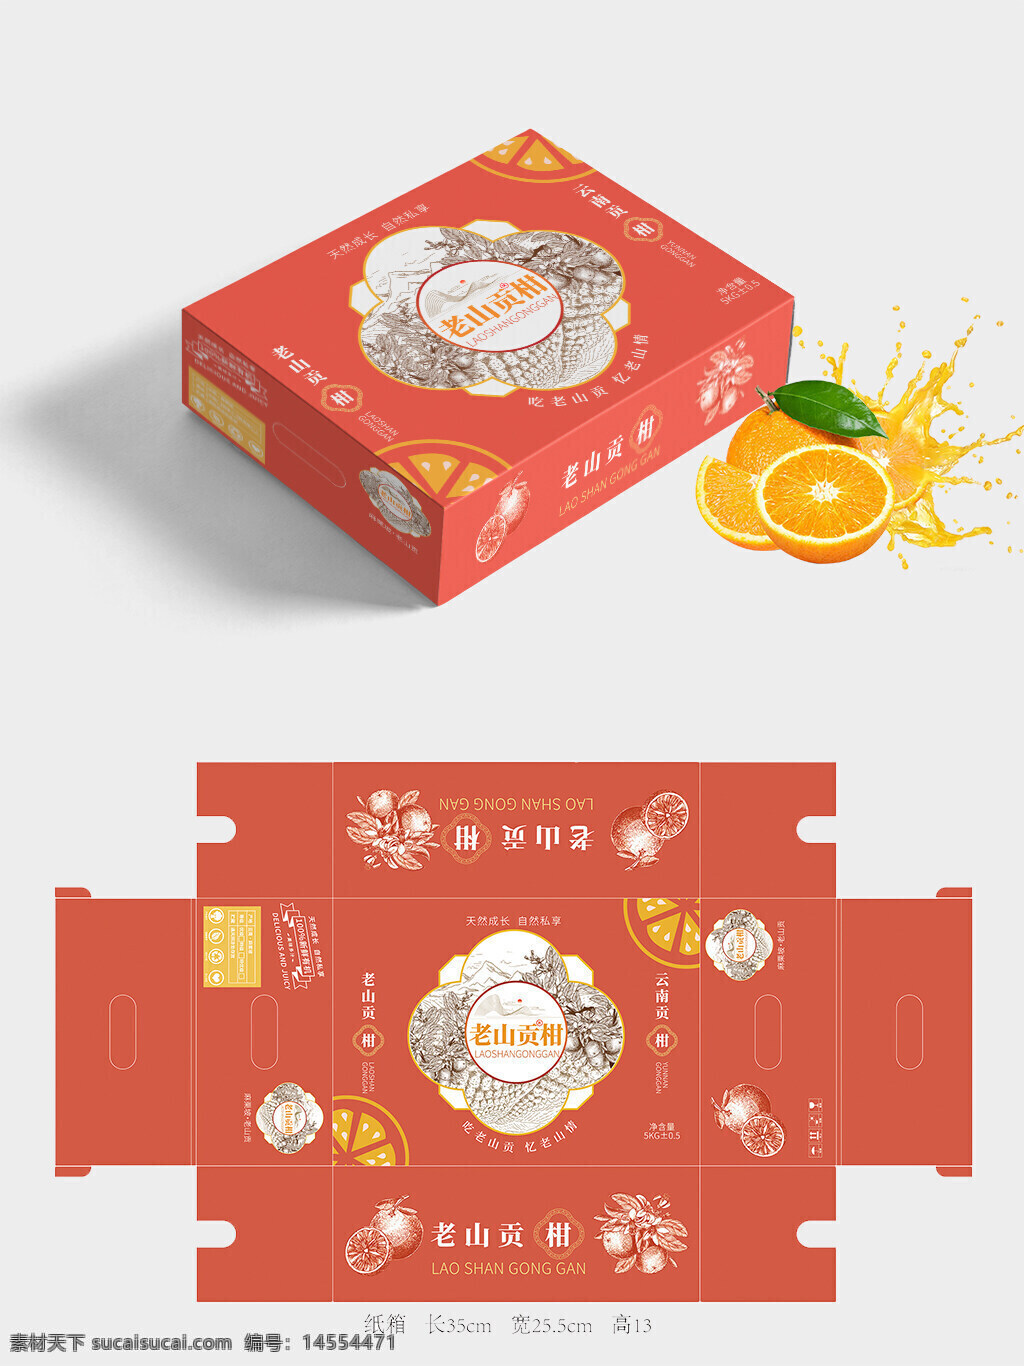 水果包装 柑橘 柑 橘子 包装 包装盒 水果 食品包装 纸箱